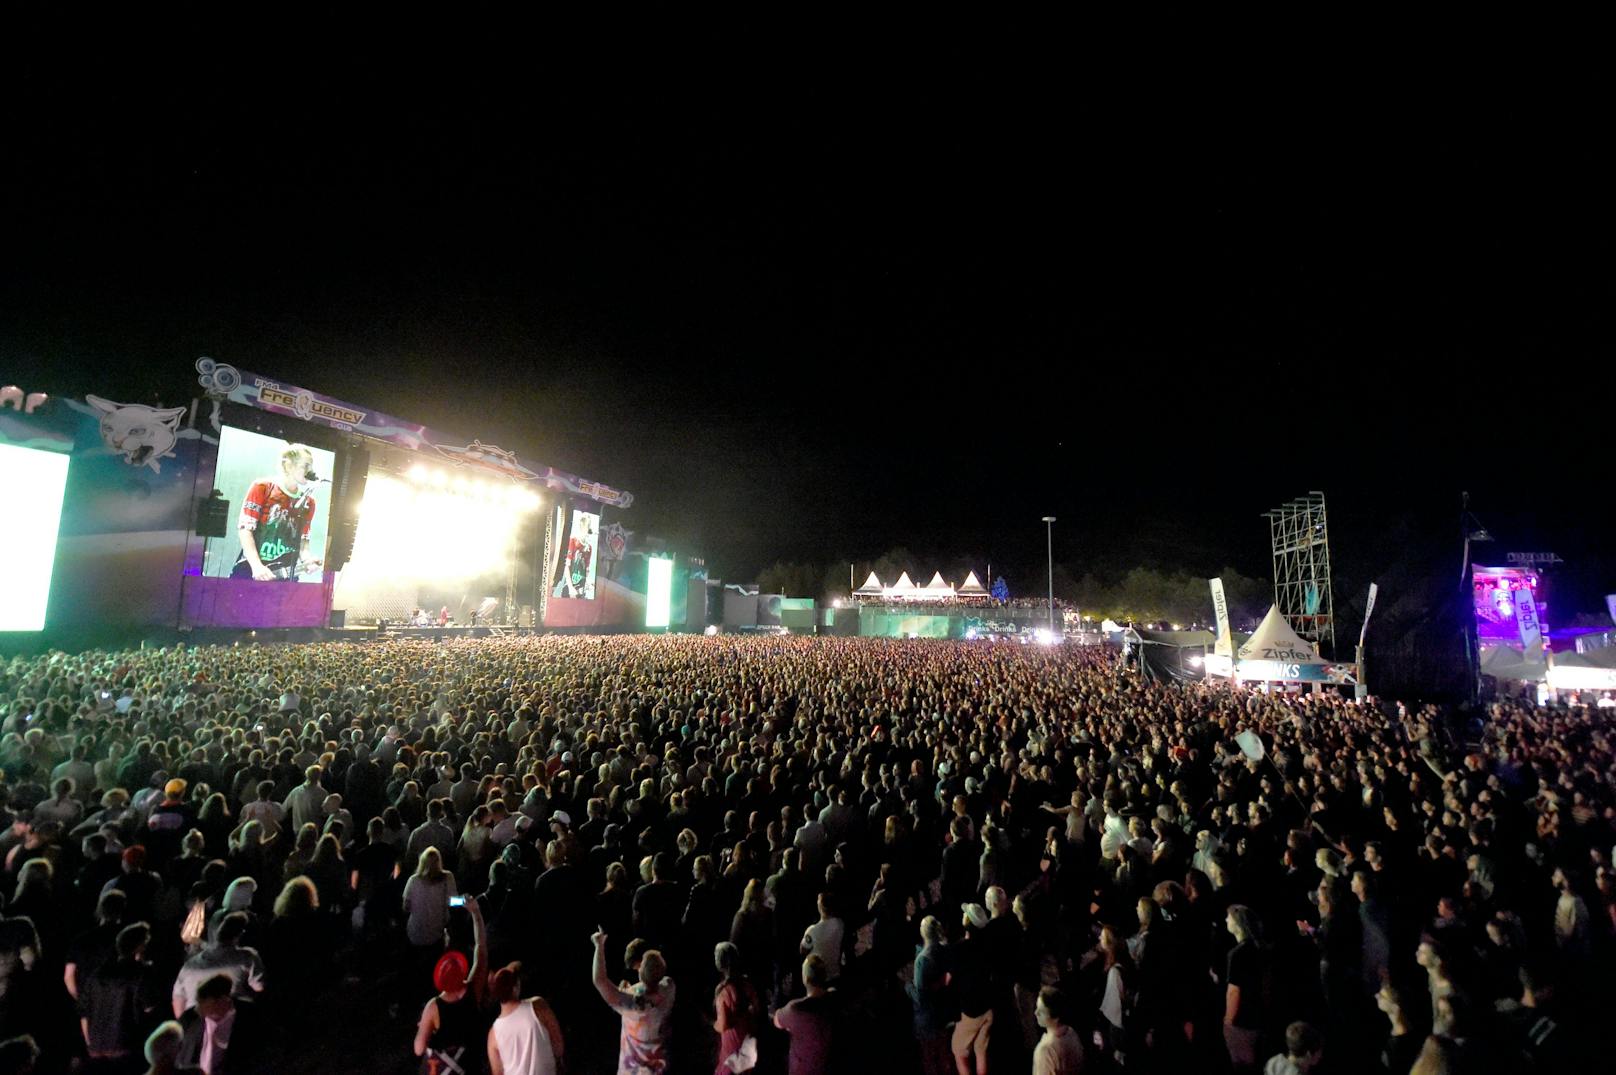 Festivalbesucher während eines Konzertes von Bilderbuch beim Auftritt im Jahr 2017 in St. Pölten